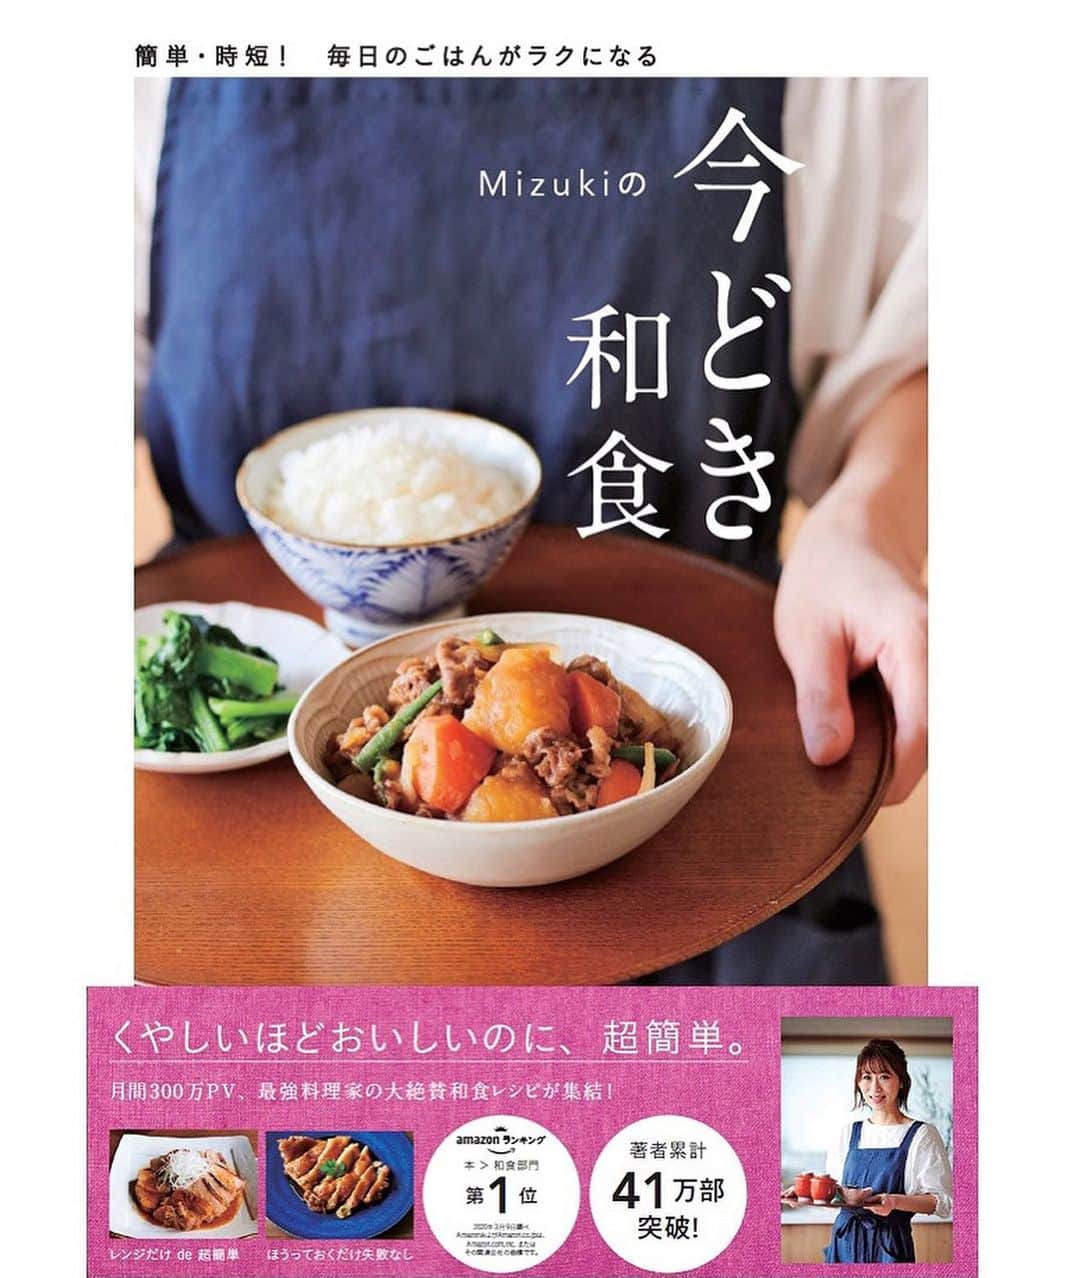 Mizuki【料理ブロガー・簡単レシピ】さんのインスタグラム写真 - (Mizuki【料理ブロガー・簡単レシピ】Instagram)「・﻿ 【#レシピ 】ーーーーーーーー﻿ ♡ひき肉と小松菜の甘辛丼♡﻿ ーーーーーーーーーーーーーー﻿ ﻿ ﻿ ﻿ おはようございます(*^^*)﻿ ﻿ 今日ご紹介させていただくのは﻿ ささっとできるのっけごはん♩﻿ \\ ひき肉と小松菜の甘辛丼 //﻿ ﻿ あっさり和風の甘辛味に﻿ とろ〜りたまごが相性抜群！！﻿ これとっても普通だけれど(笑)﻿ 間違いなく美味しいやつです♡﻿ ﻿ 簡単でコスパもいいので﻿ よかったらお試し下さいね(*´艸`)﻿ ﻿ ﻿ ﻿ ＿＿＿＿＿＿＿＿＿＿＿＿＿＿＿＿＿＿＿＿﻿ 【3人分】﻿ 合いびき肉...150g﻿ 小松菜...1束(200g)﻿ 玉ねぎ...1/4個﻿ サラダ油...小1﻿ 塩こしょう...少々﻿ ●醤油・酒・みりん...各大1.5﻿ ●にんにくチューブ...1cm﻿ ごはん・卵黄...各3人分﻿ ﻿ 1.小松菜は4cm長さに切る。玉ねぎは薄切りにする。●は合わせておく。﻿ 2.フライパンにサラダ油を中火で熱し、ひき肉と玉ねぎを炒める。火が通ったら小松菜も加えて更に炒め、しんなりしたら●を加えて煮からめる。﻿ 3.器にごはんを盛って2をかけ、卵黄をのせる。﻿ ￣￣￣￣￣￣￣￣￣￣￣￣￣￣￣￣￣￣￣￣﻿ ﻿ ﻿ ﻿ ﻿ 《ポイント》﻿ ♦︎豚ひき肉で作っても◎﻿ ♦︎(好みで)仕上げにラー油をかけても美味しいです♩﻿ ♦︎作り置きもOK！冷蔵庫で3日くらい保存できます♩﻿ ﻿ ﻿ ﻿ ﻿ ﻿ ﻿ ﻿ ﻿ 📕新刊発売中📕﻿ 【ラクしておいしい！#1品晩ごはん 】﻿ ￣￣￣￣￣￣￣￣￣￣￣￣￣￣￣￣￣﻿ 私たちだってヘトヘトな日がある•••﻿ 毎日何品も作っていられない•••﻿ もうごはんに悩みたくない😢﻿ そんな時、1品ごはんはいかがでしょう？﻿ というご提案です✨﻿ ﻿ 【1品ごはん】は﻿ 副菜いらずで全てがシンプル！﻿ ￣￣￣￣￣￣￣￣￣￣￣￣￣￣￣￣￣￣﻿ 一品つくるだけでいいから﻿ 献立を考えなくてよし！﻿ ￣￣￣￣￣￣￣￣￣￣￣￣￣￣￣￣￣￣﻿ 悩まない、疲れない、﻿ 気力や時間がなくてもなんとかなる！﻿ ￣￣￣￣￣￣￣￣￣￣￣￣￣￣￣￣￣￣﻿ そんな頼りになる﻿ 便利なお助けごはんです☺️💕﻿ (ハイライトに🔗貼っています✨)﻿ ￣￣￣￣￣￣￣￣￣￣￣￣￣￣￣￣￣﻿ ﻿ ﻿ ﻿ ﻿ ﻿ ⭐️発売中⭐️﻿ ＿＿＿＿＿＿＿＿＿＿＿＿＿＿＿＿＿＿﻿ しんどくない献立、考えました♩﻿ \15分でいただきます/﻿ 📕#Mizukiの2品献立 📕﻿ ﻿ 和食をもっとカジュアルに♩﻿ \毎日のごはんがラクになる/﻿ 📘#Mizukiの今どき和食 📘﻿ ﻿ ホケミレシピの決定版♩﻿ \はじめてでも失敗しない/﻿ 📙#ホットケーキミックスのお菓子 📙﻿ ﻿ NHKまる得マガジンテキスト☆﻿ ホットケーキミックスで﻿ 📗絶品おやつ&意外なランチ📗﻿ ￣￣￣￣￣￣￣￣￣￣￣￣￣￣￣￣￣￣﻿ ﻿ ﻿ ﻿ ＿＿＿＿＿＿＿＿＿＿＿＿＿＿＿＿＿＿﻿ レシピを作って下さった際や﻿ レシピ本についてのご投稿には﻿ タグ付け( @mizuki_31cafe )して﻿ お知らせいただけると嬉しいです😊💕﻿ ￣￣￣￣￣￣￣￣￣￣￣￣￣￣￣￣￣￣﻿ ﻿ ﻿ ﻿ ﻿ #ひき肉#小松菜#丼#Mizuki#簡単レシピ#時短レシピ#節約レシピ#料理#フーディーテーブル#マカロニメイト#おうちごはん#デリスタグラマー#料理好きな人と繋がりたい#おうちごはんlover#写真好きな人と繋がりたい#foodpic#cooking#recipe#lin_stagrammer#foodporn#yummy#f52grams#ひき肉と小松菜の甘辛丼m」1月7日 7時12分 - mizuki_31cafe